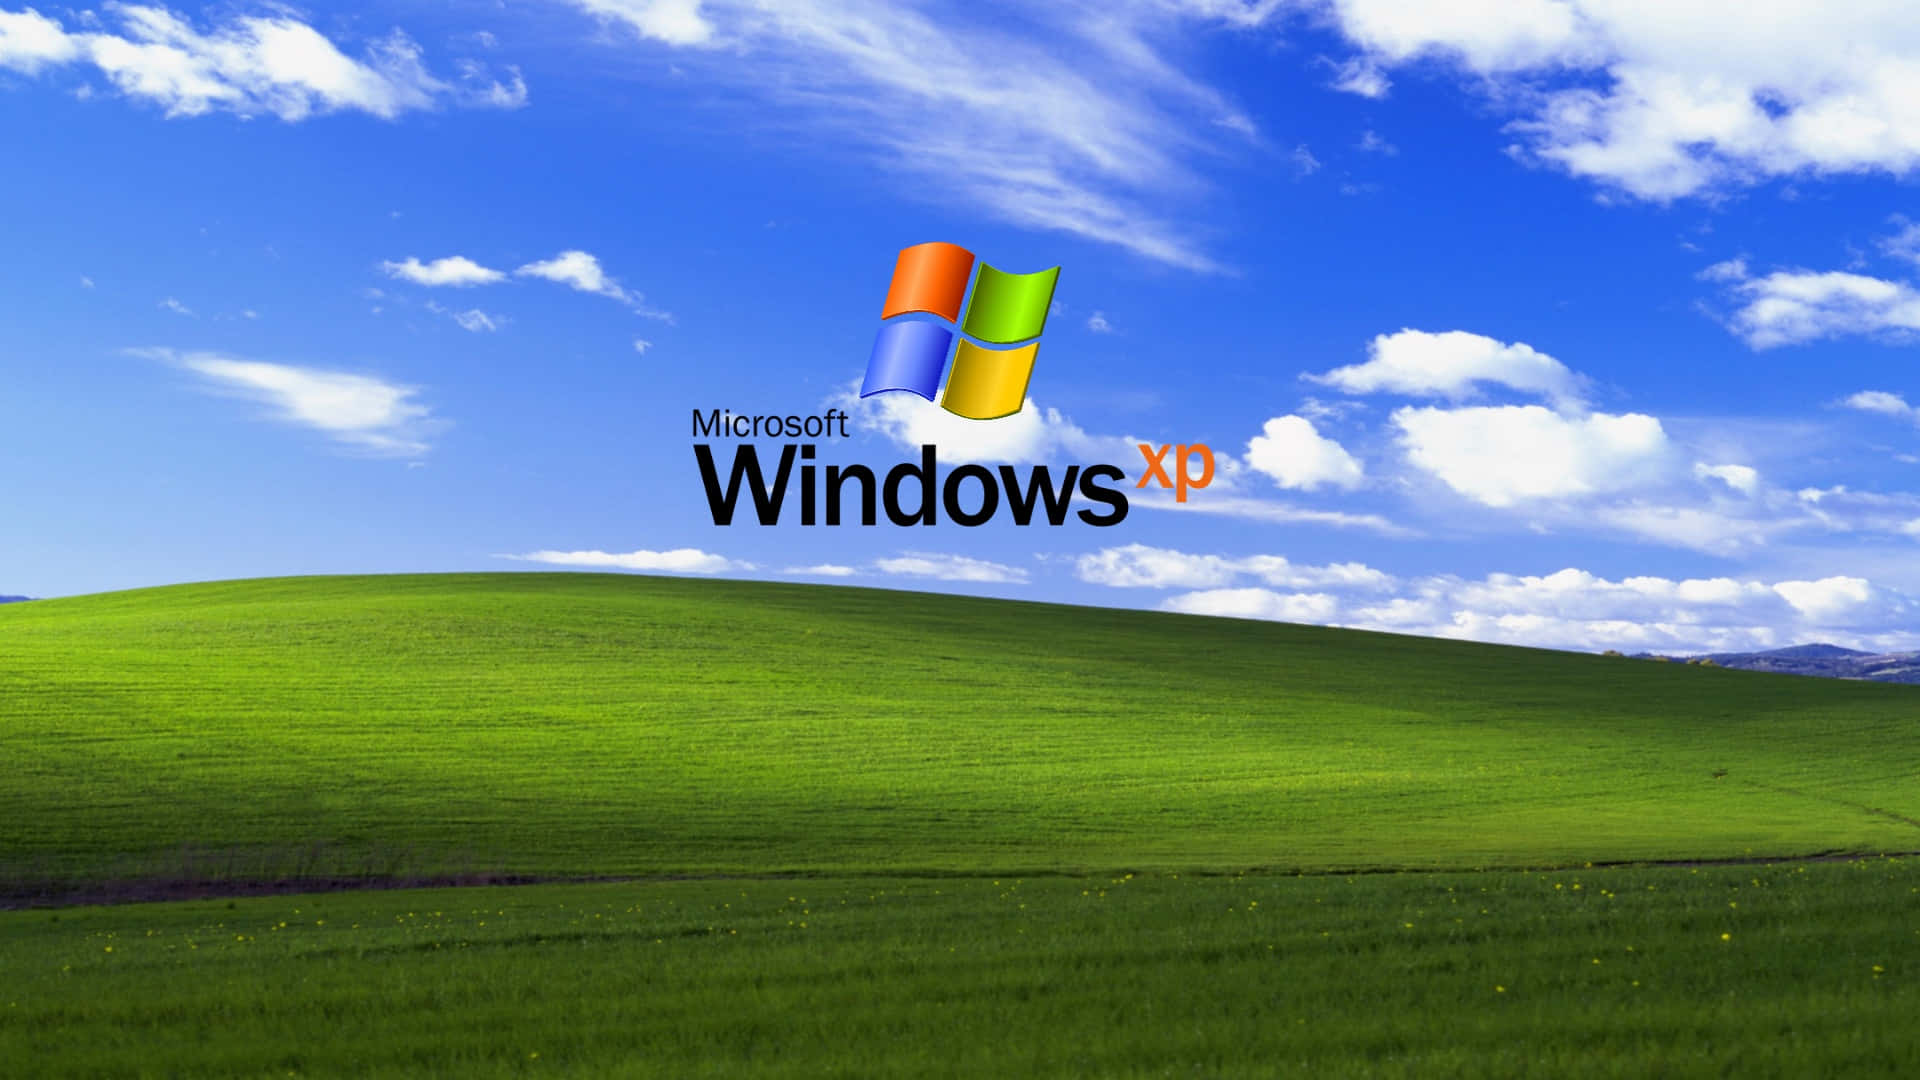 Windows Xp-logo Wallpaper